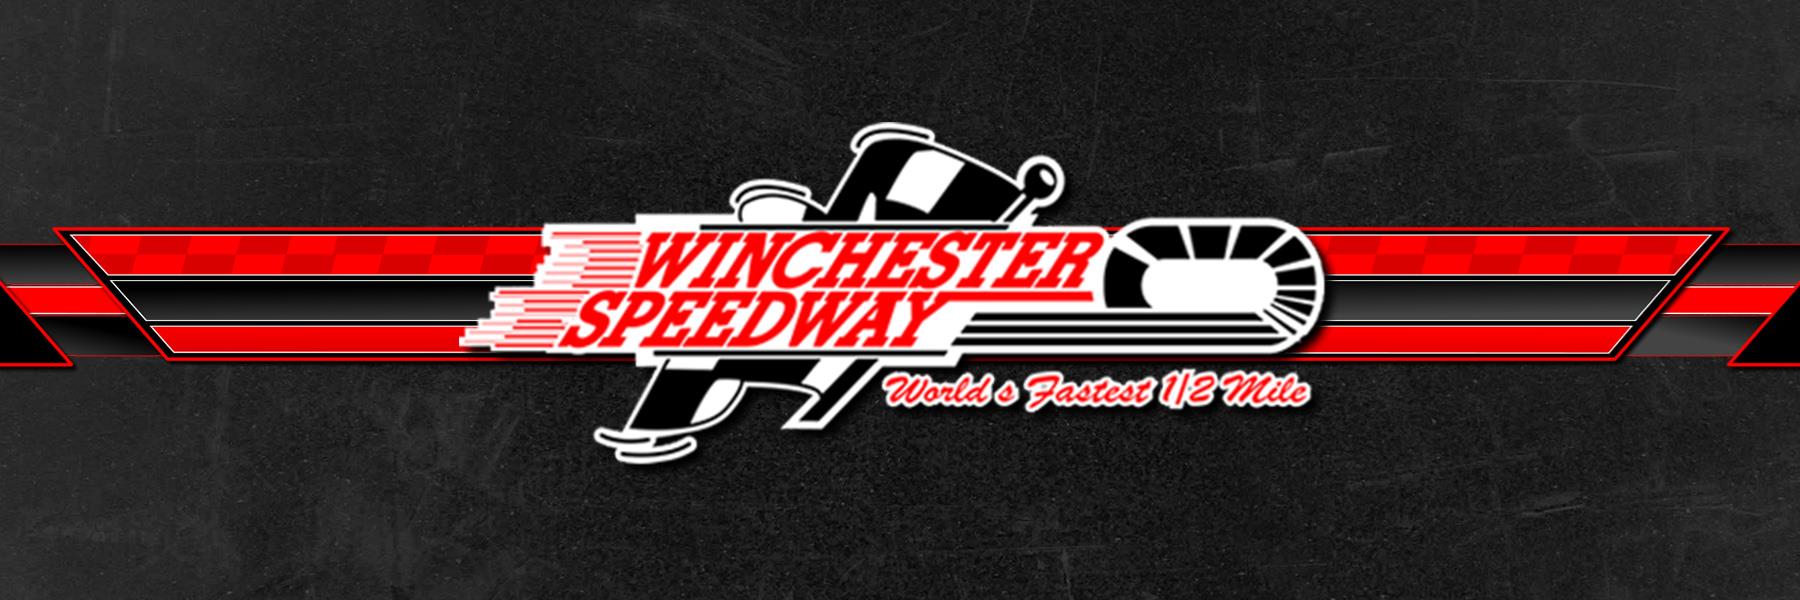 7/2/2009 - Winchester Speedway